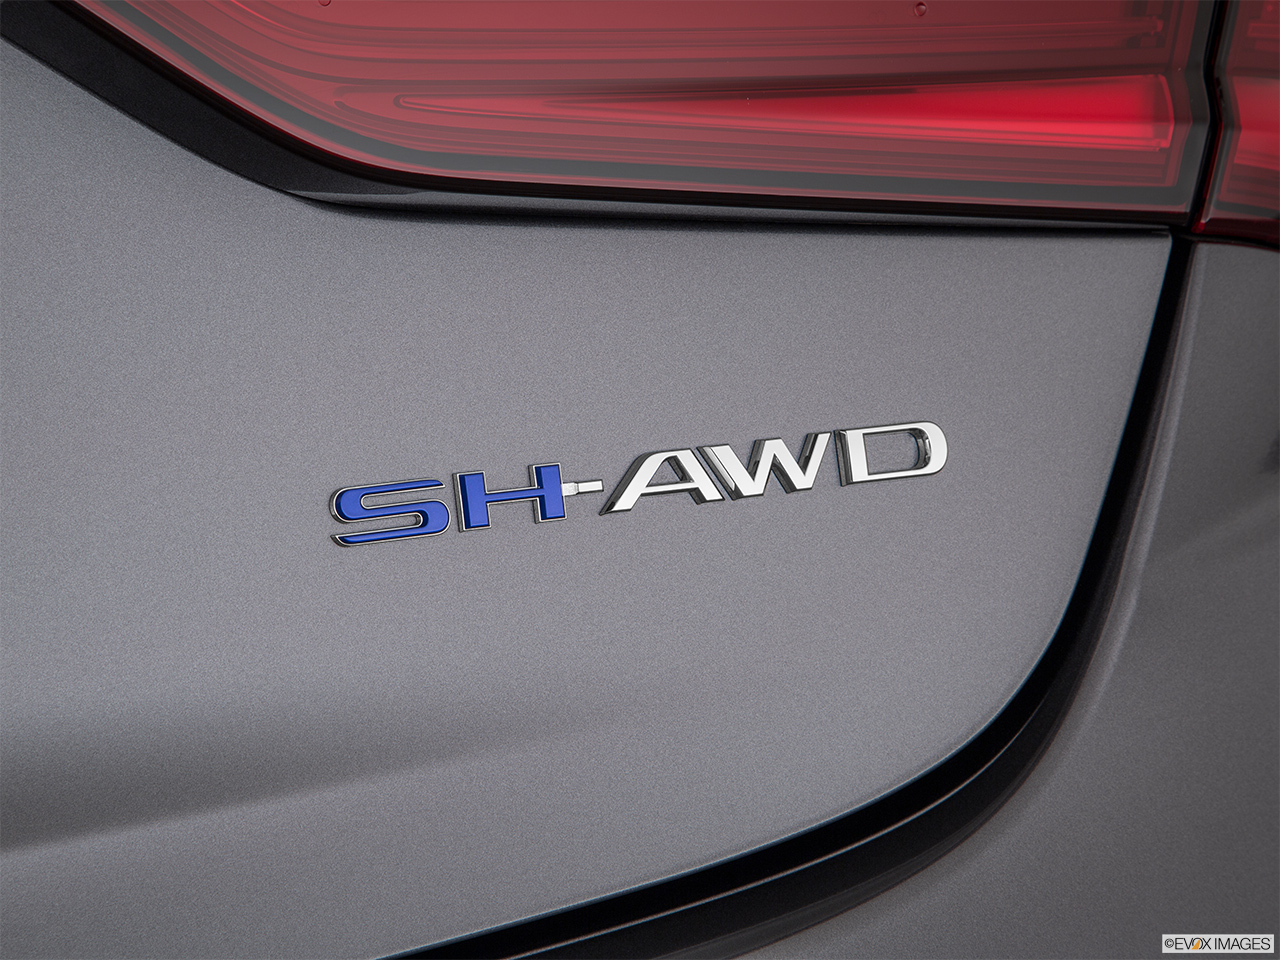 2020 Acura RLX Sport Hybrid SH-AWD Exterior Bonus Shots (no set spec) 